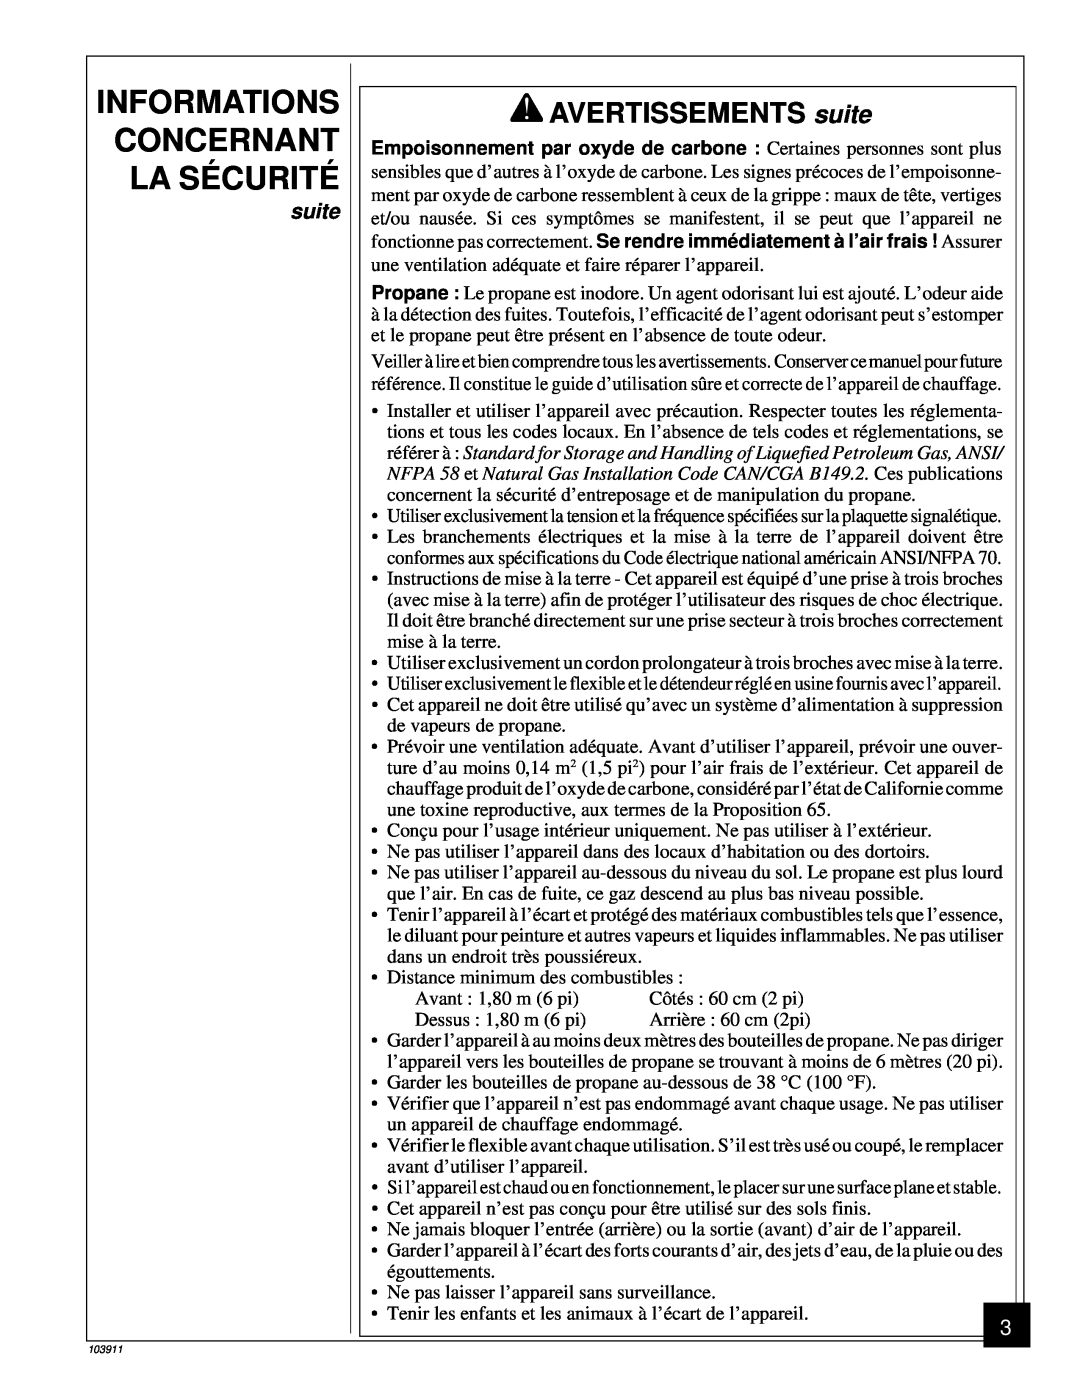 Desa RCLP50B owner manual AVERTISSEMENTS suite, Informations Concernant La Sécurité 